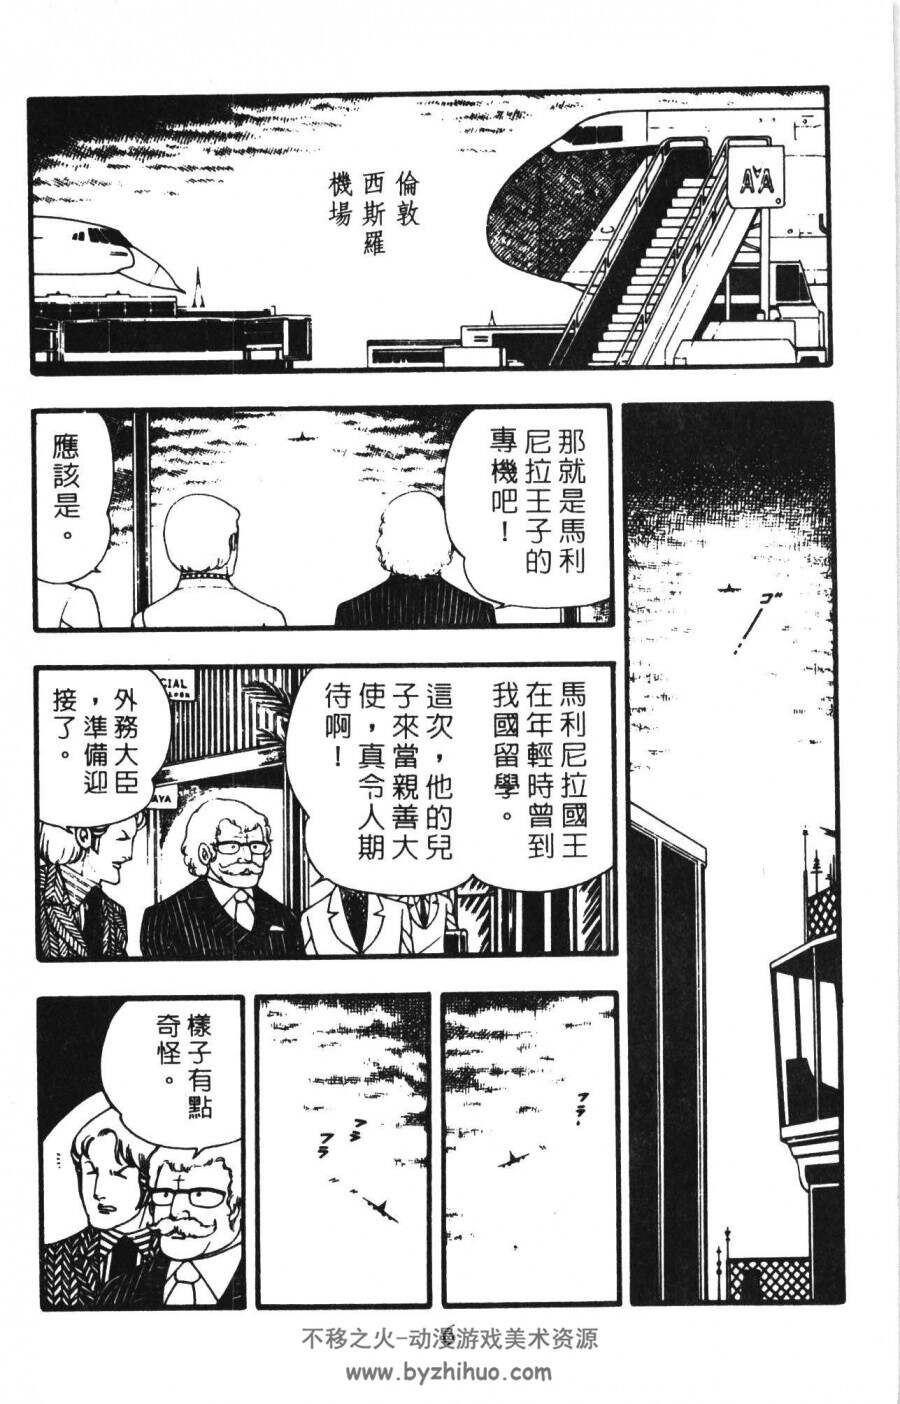 魔夜峰央 漫画作品合集 百度网盘下载